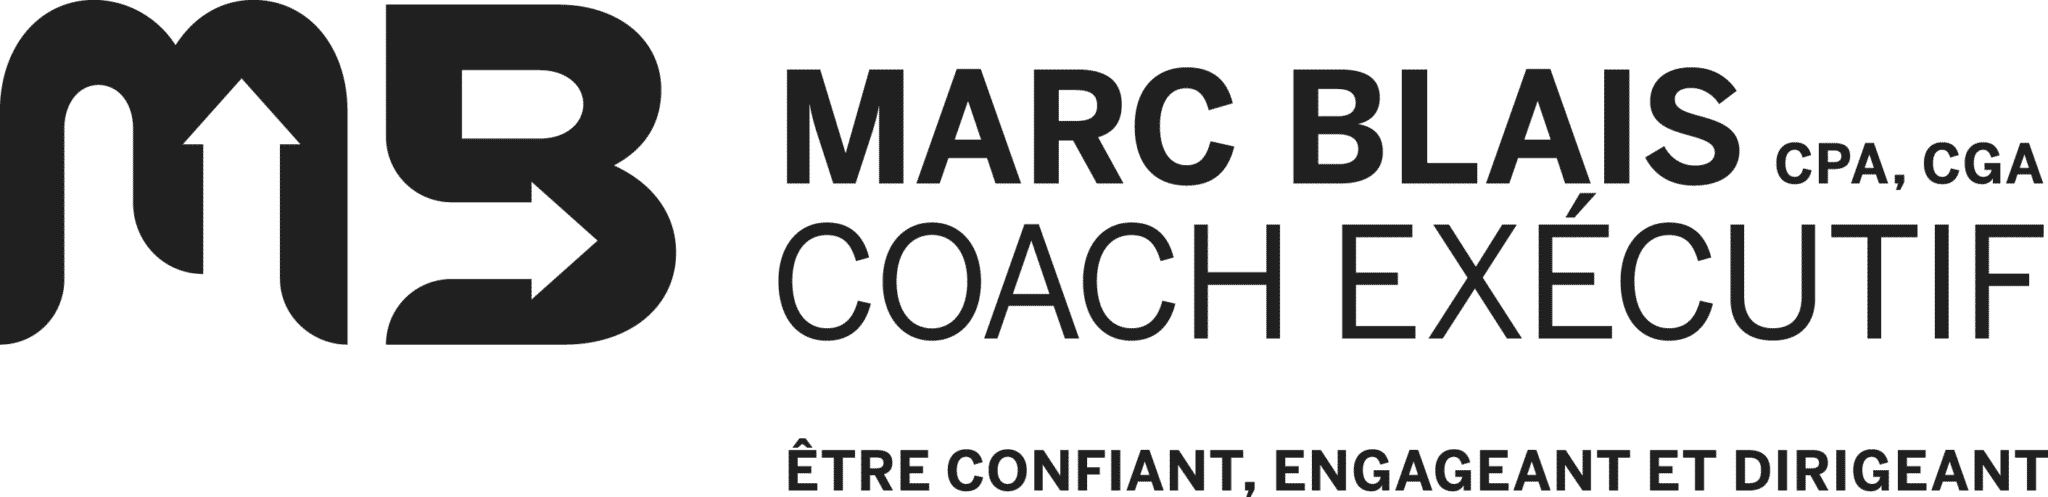 Marc Blais CPA, CGA, Coach Exécutif, Être confiant, engageant et dirigeant.